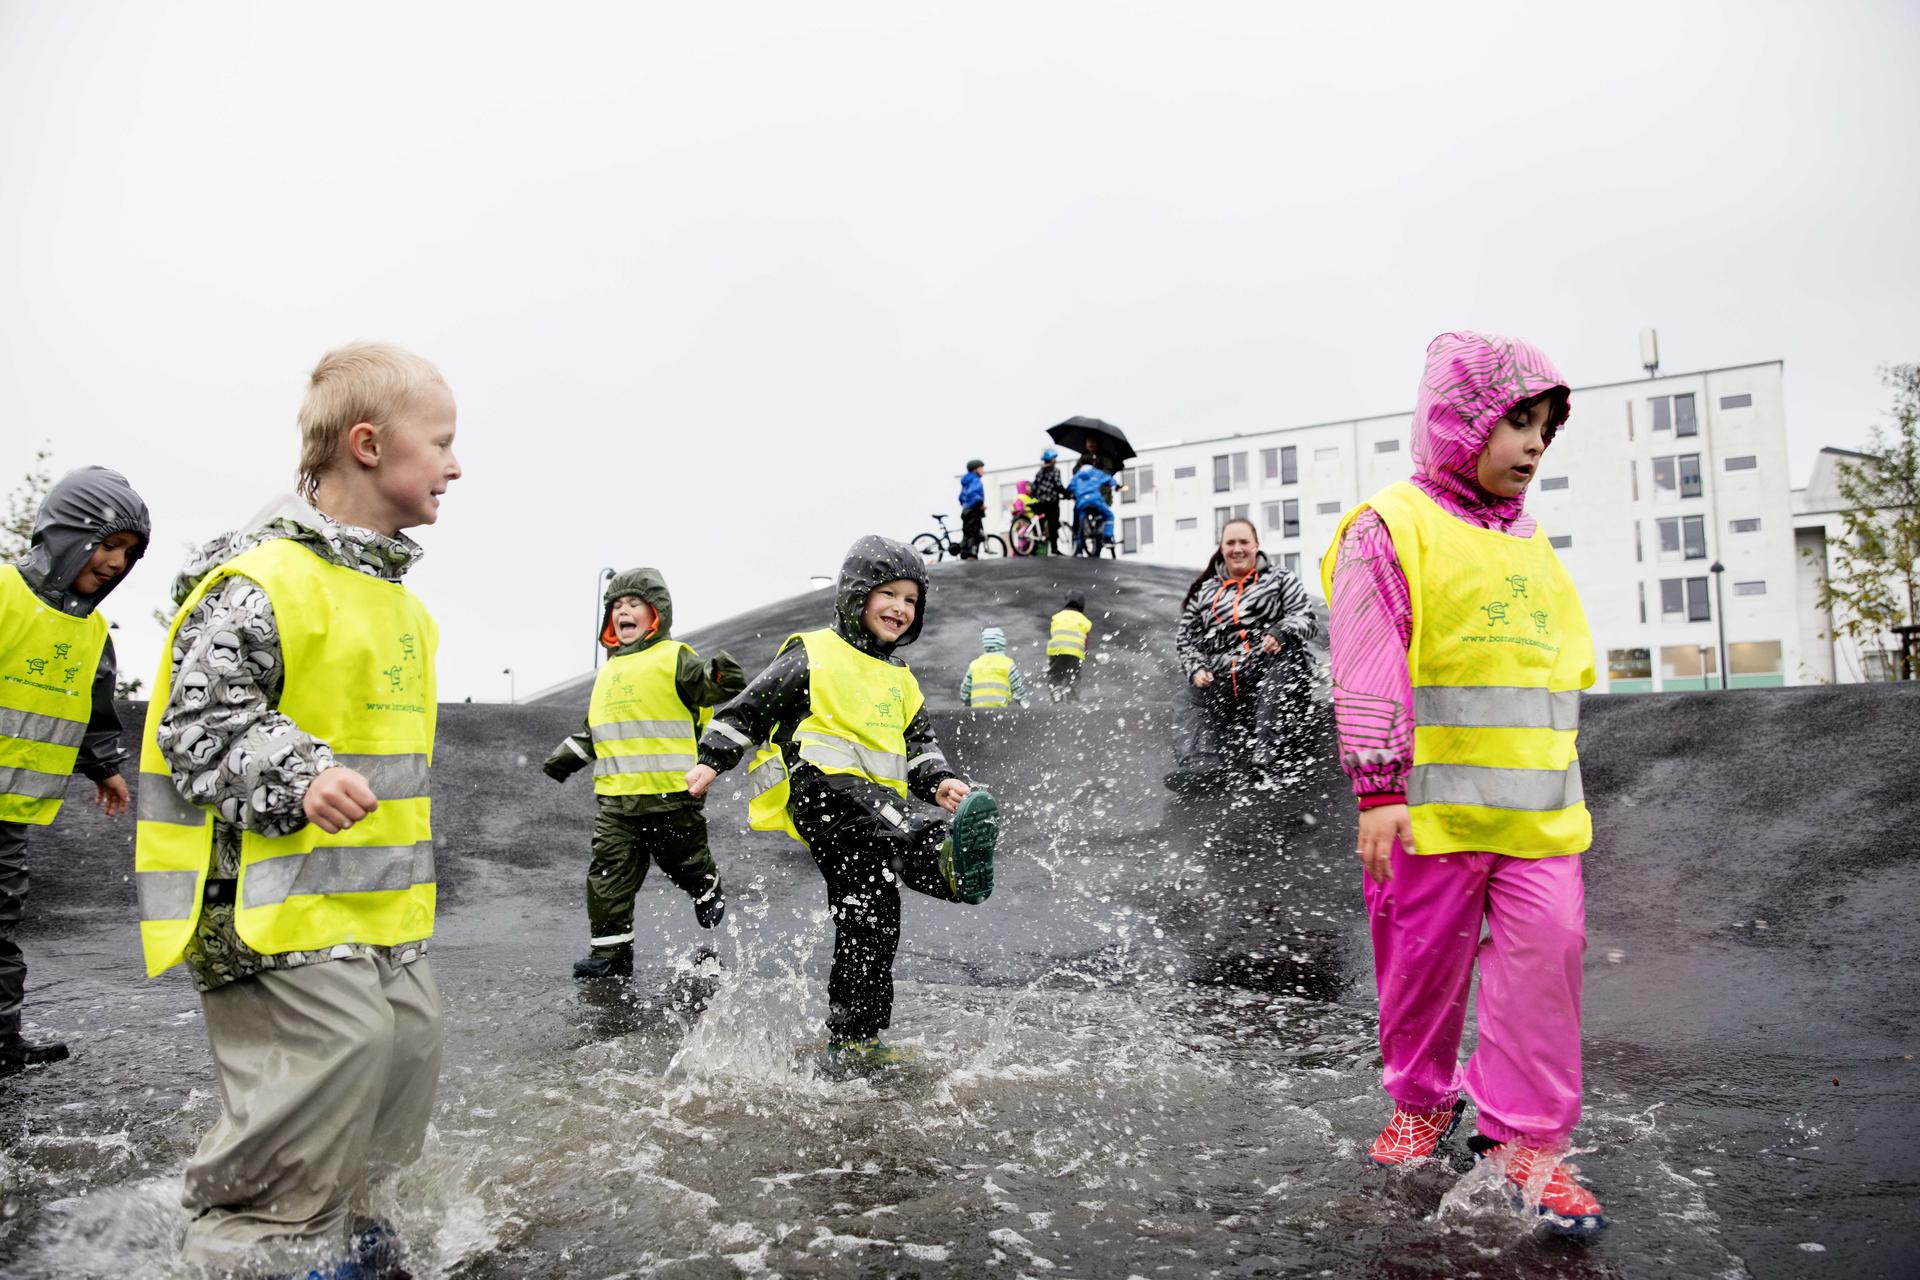 Hospodárenie s dažďovou vodou v mestách môže mať aj takúto podobu. Projekt v štvrti Kokkedal v dánskom Fredensborgu funguje ako záhrada, park aj ihrisko. 

Až 95 % dažďovej vody tu končí v kanáloch a jazerách namiesto v kanalizácii. Toto riešenie je reakciou na prietrž mračien a záplavy, ktoré mestečko postihli v roku 2010. 💧☔ - Obrázok č. 3